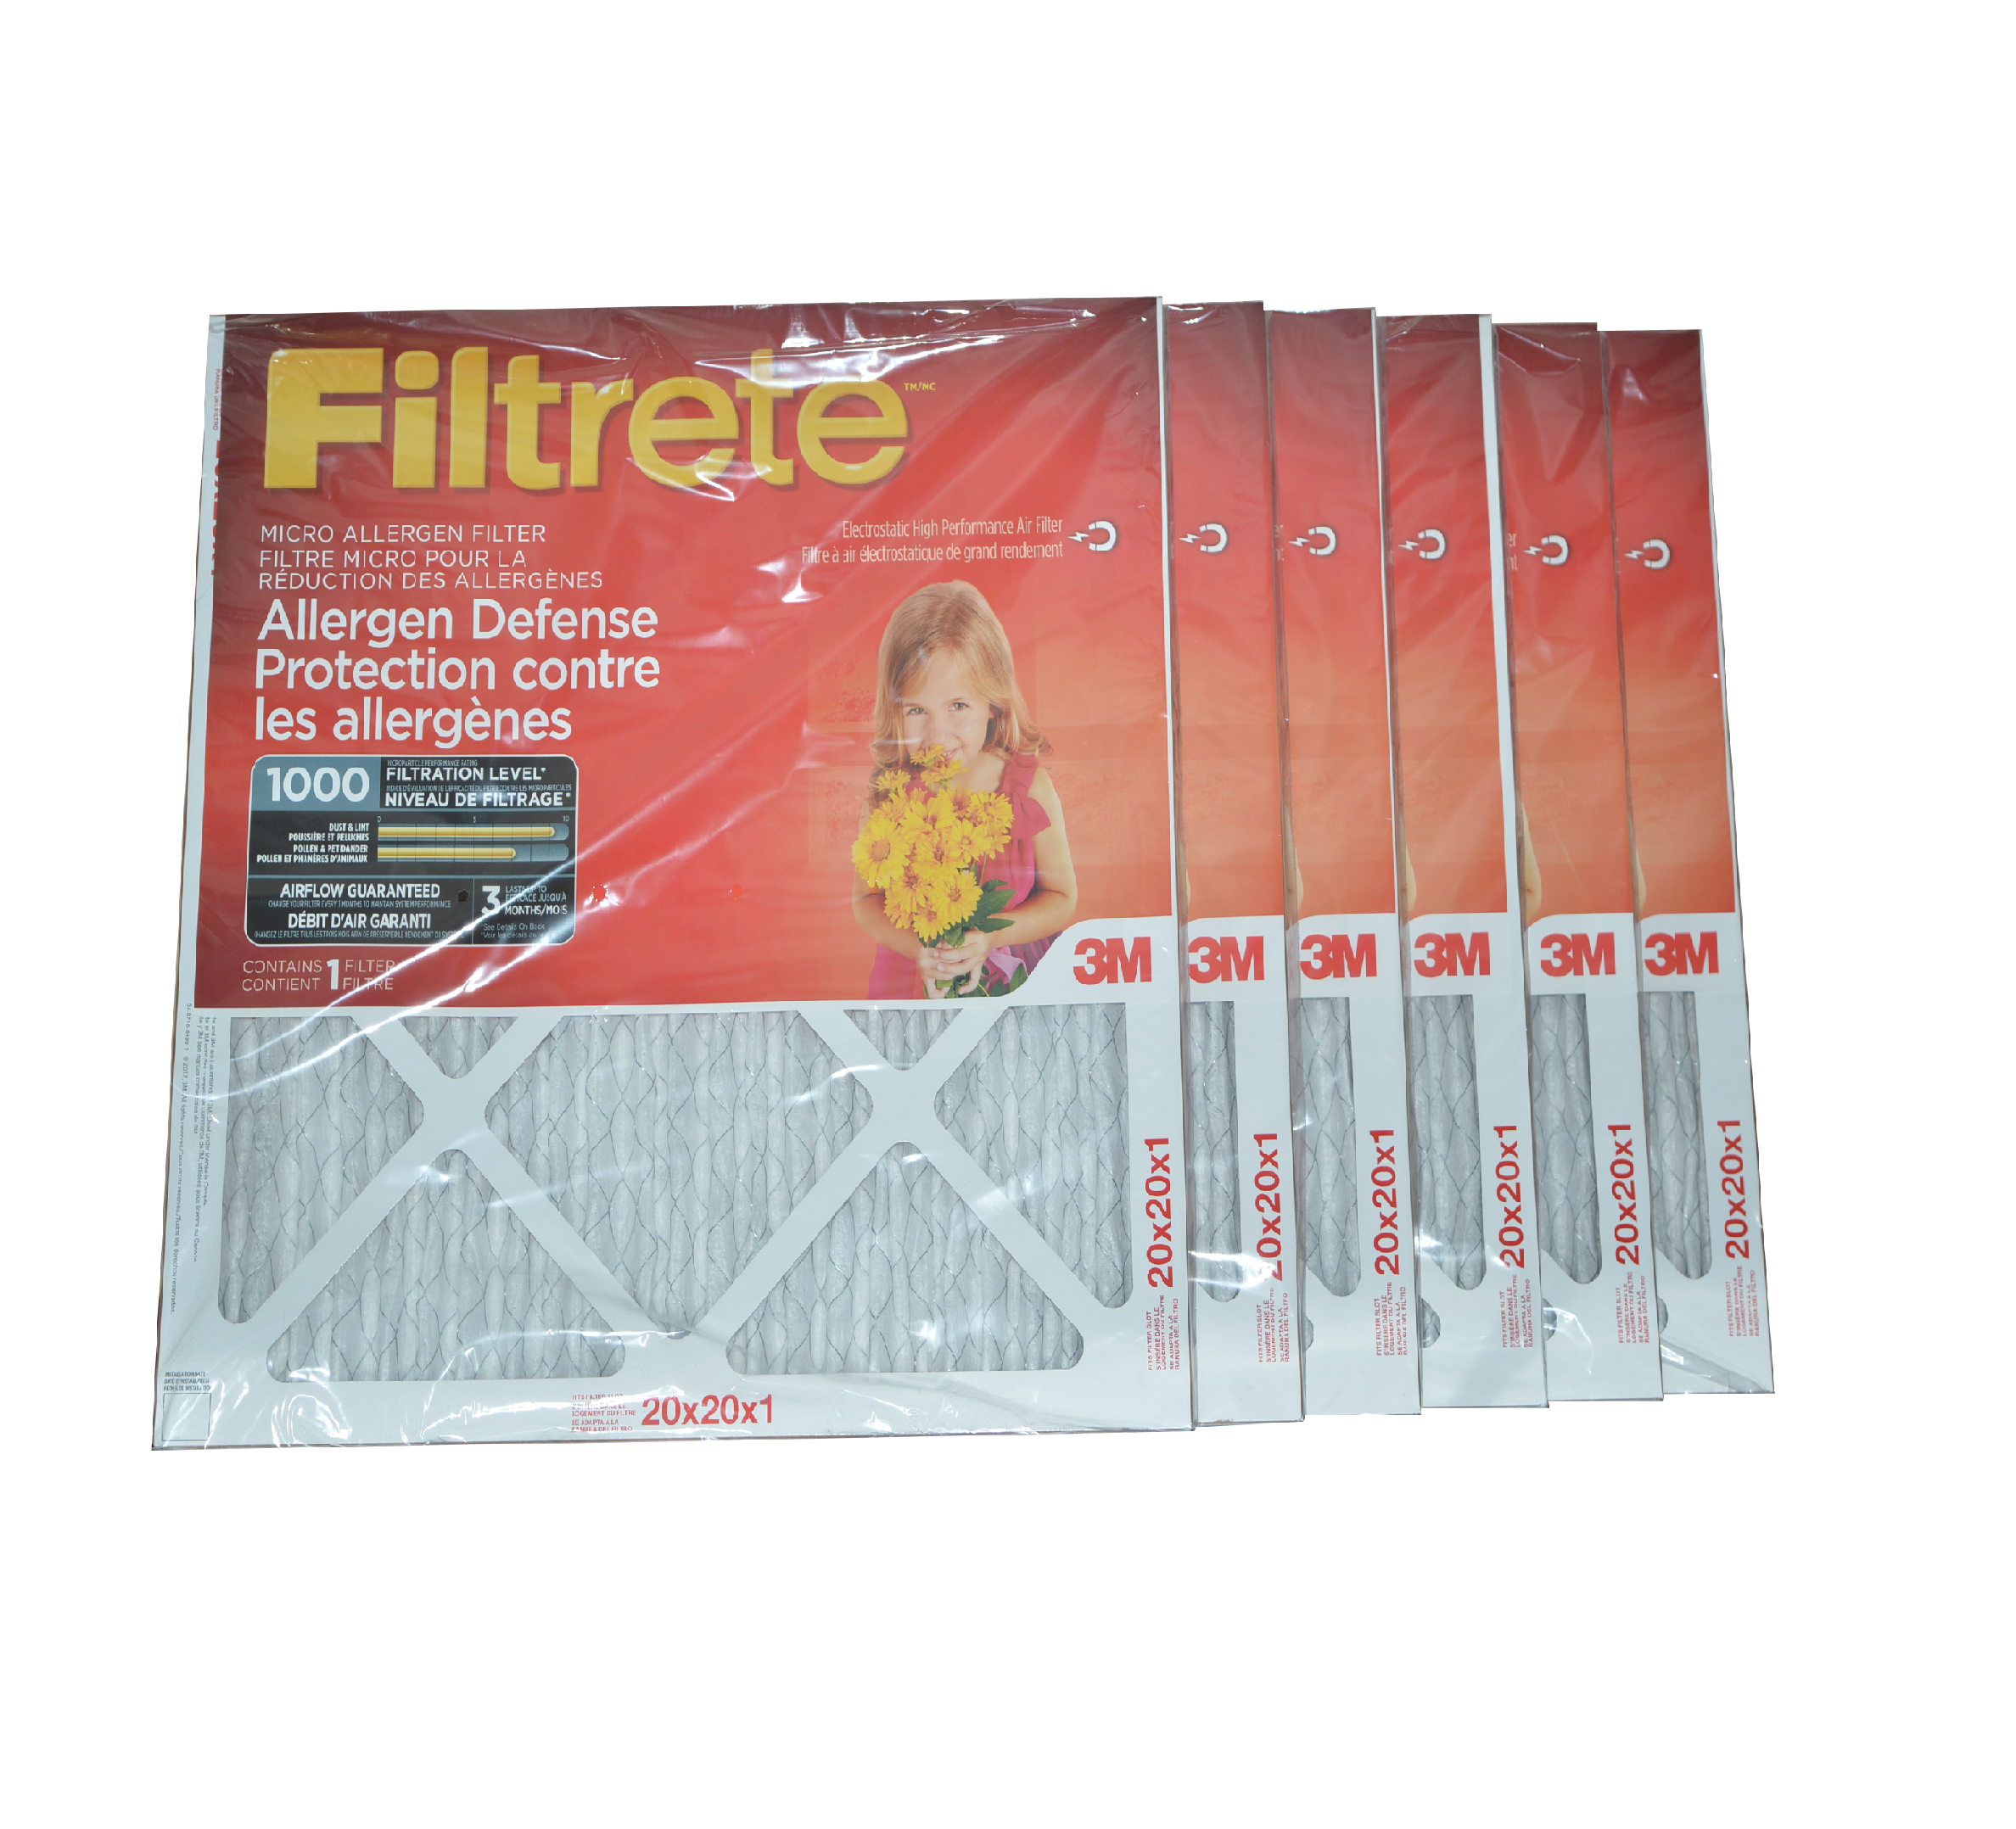 3M Filtrete 20x20x1 Furnace Filter MPR 1000. Case of 6